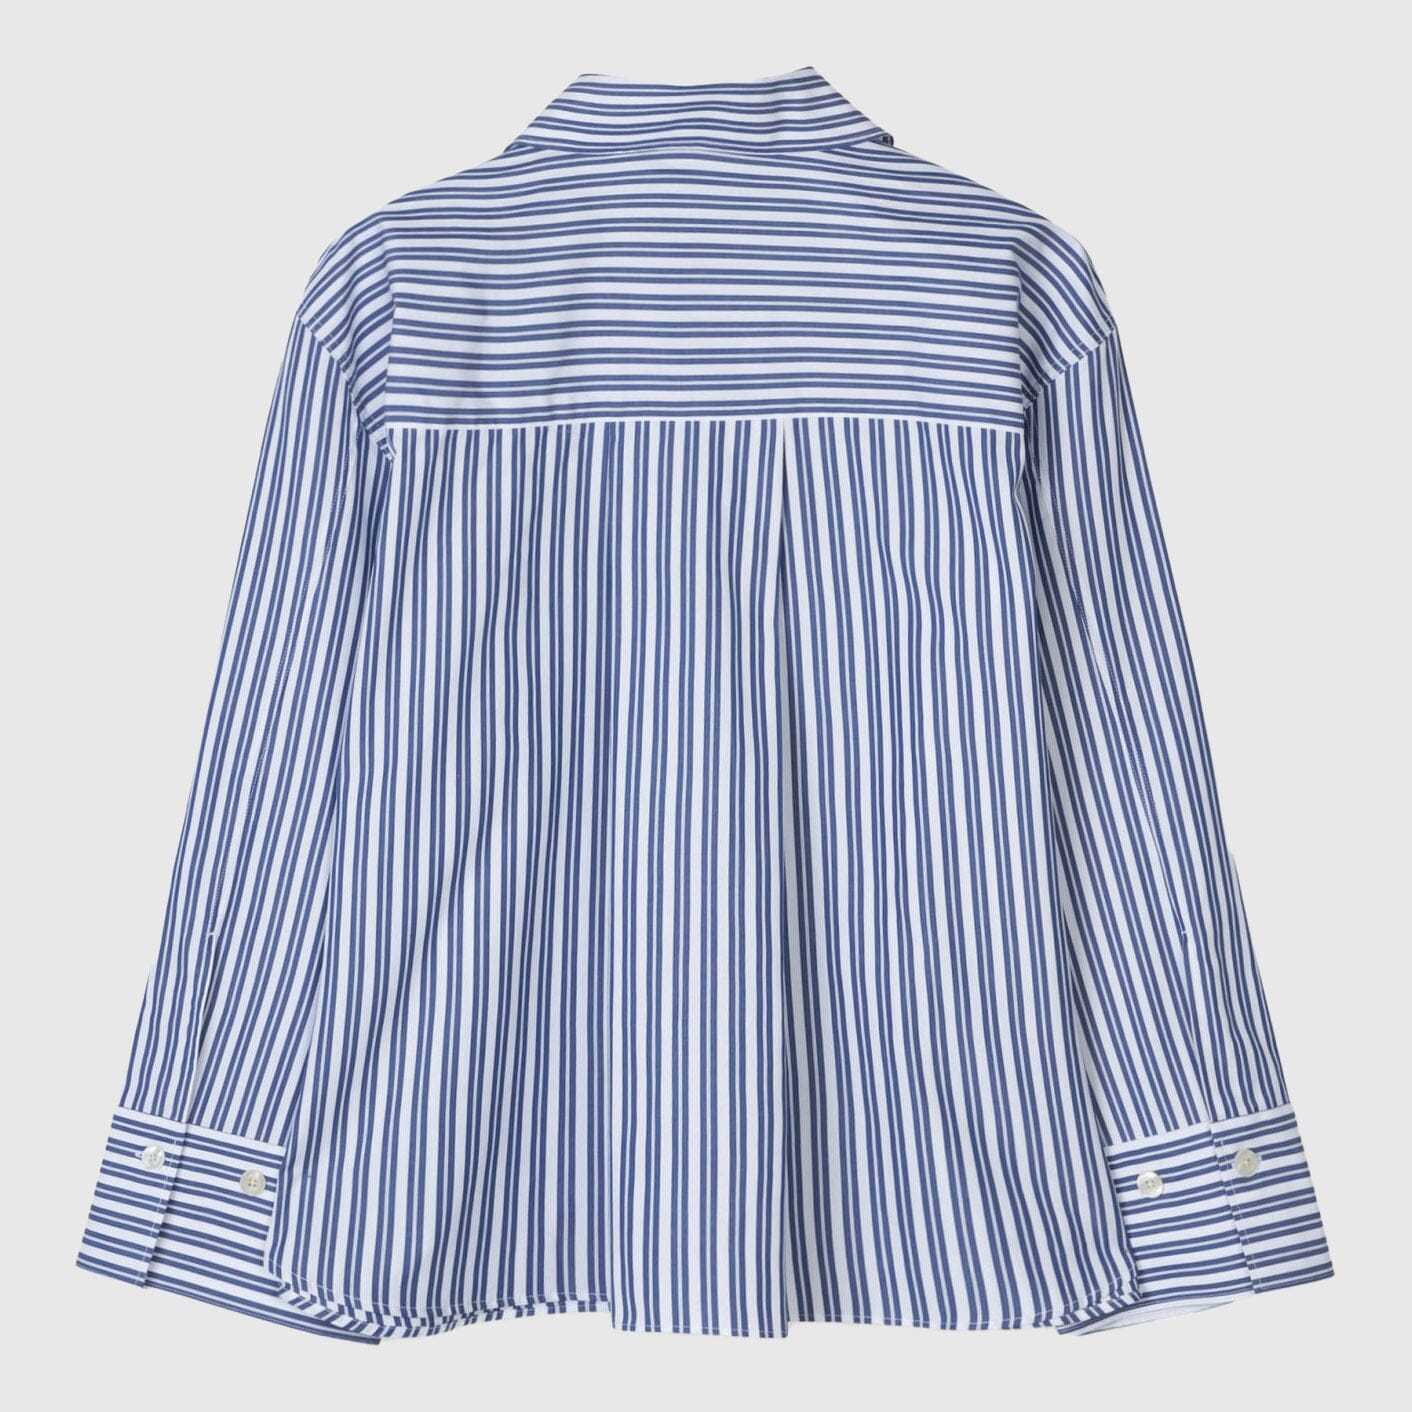 Libertine-Libertine Mercy Shirt - Dark Blue Stripe Shirt Libertine-Libertine 